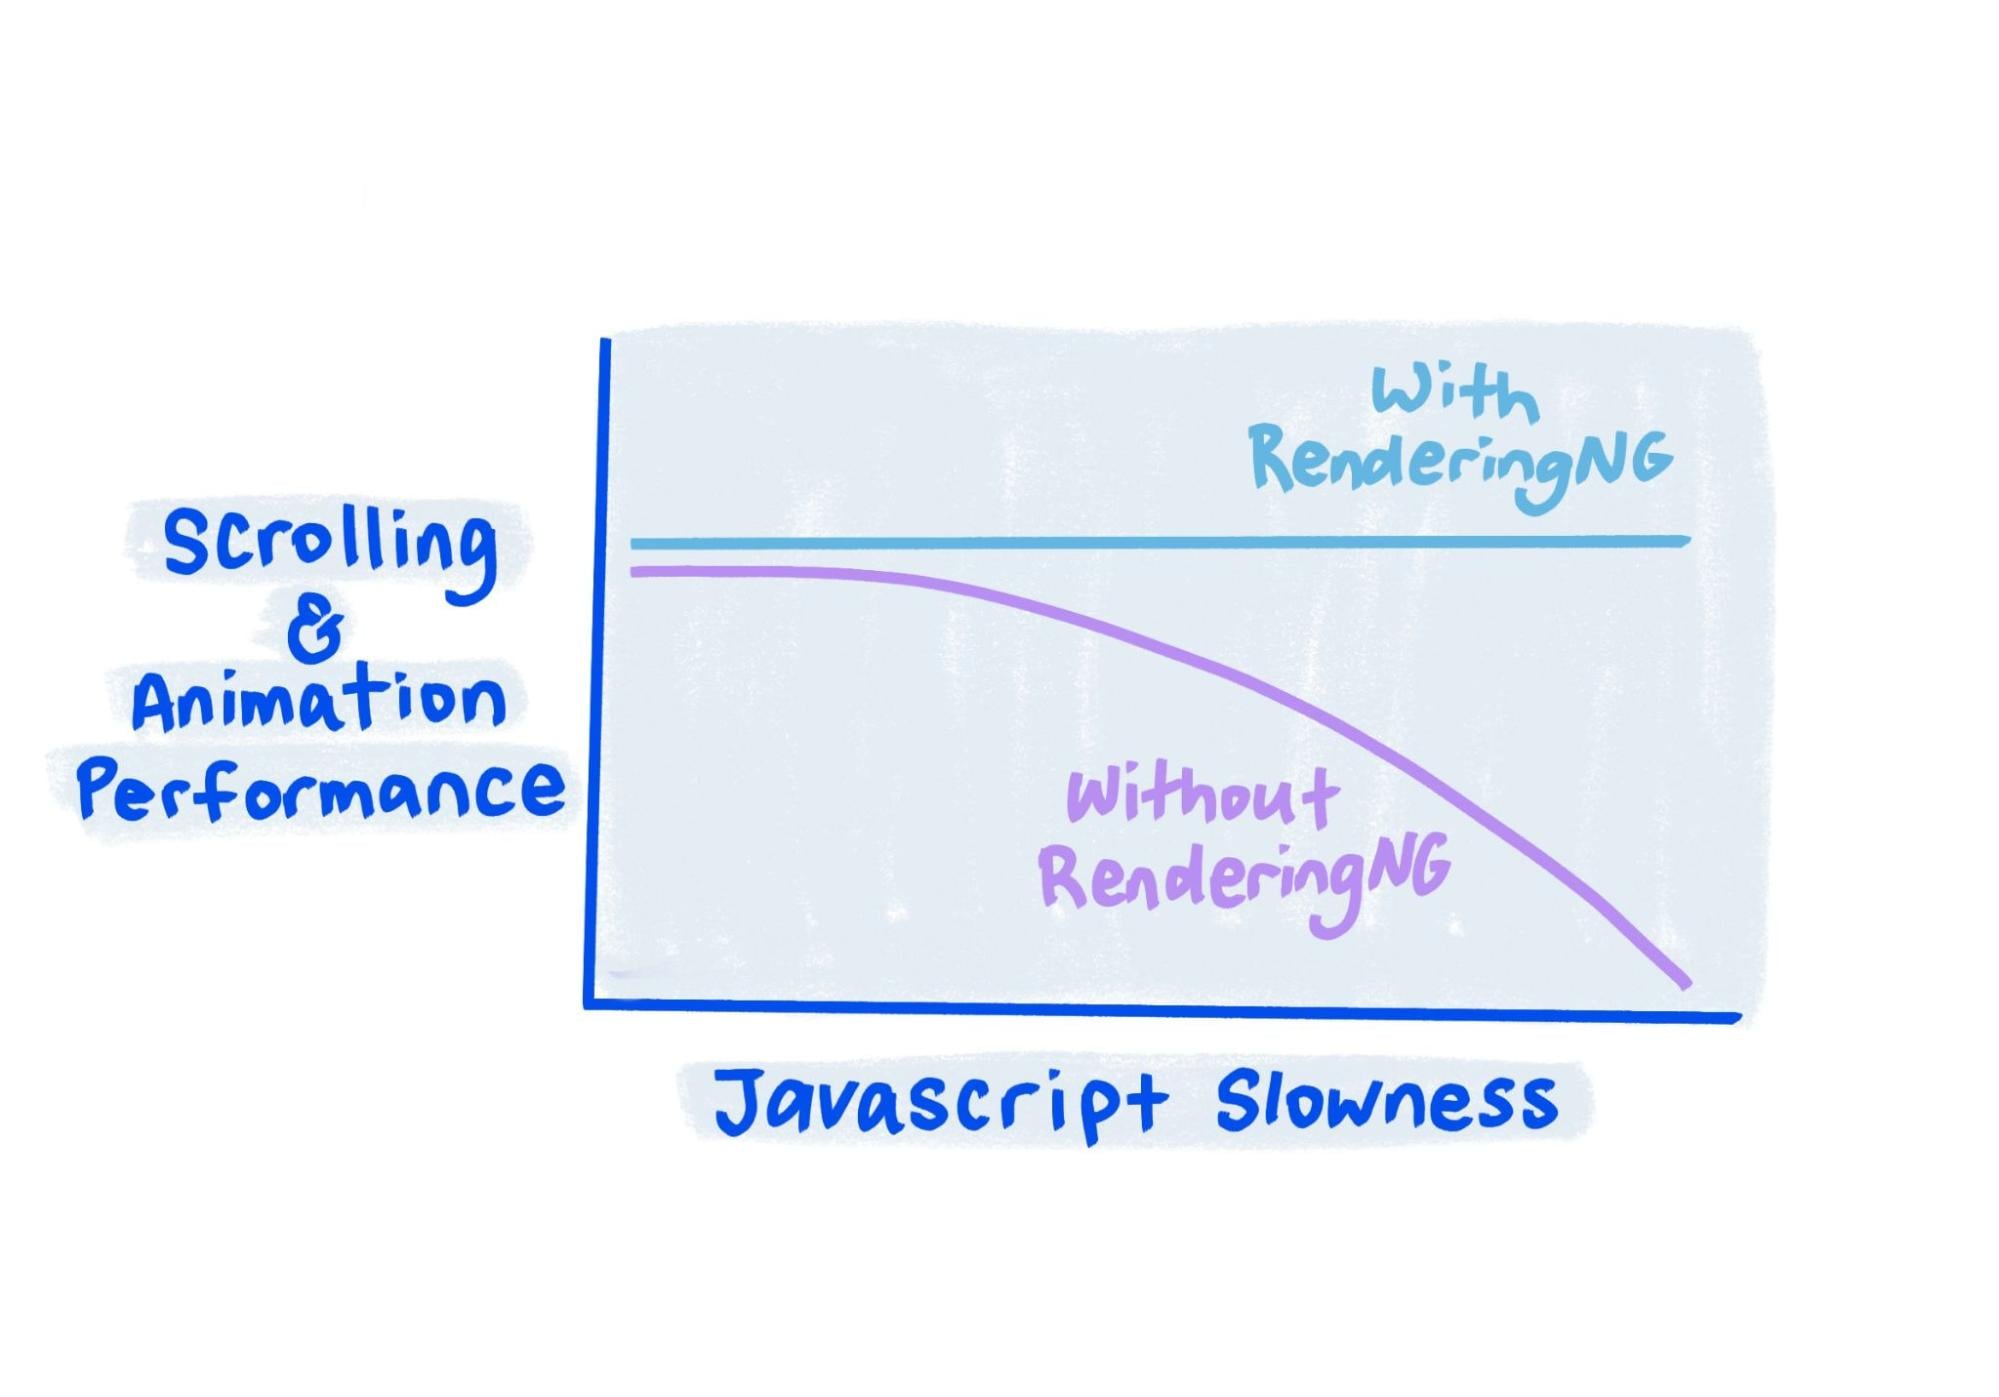 Schizzo mostra che le prestazioni di RenderingNG rimangono solide anche quando JavaScript è molto lento.